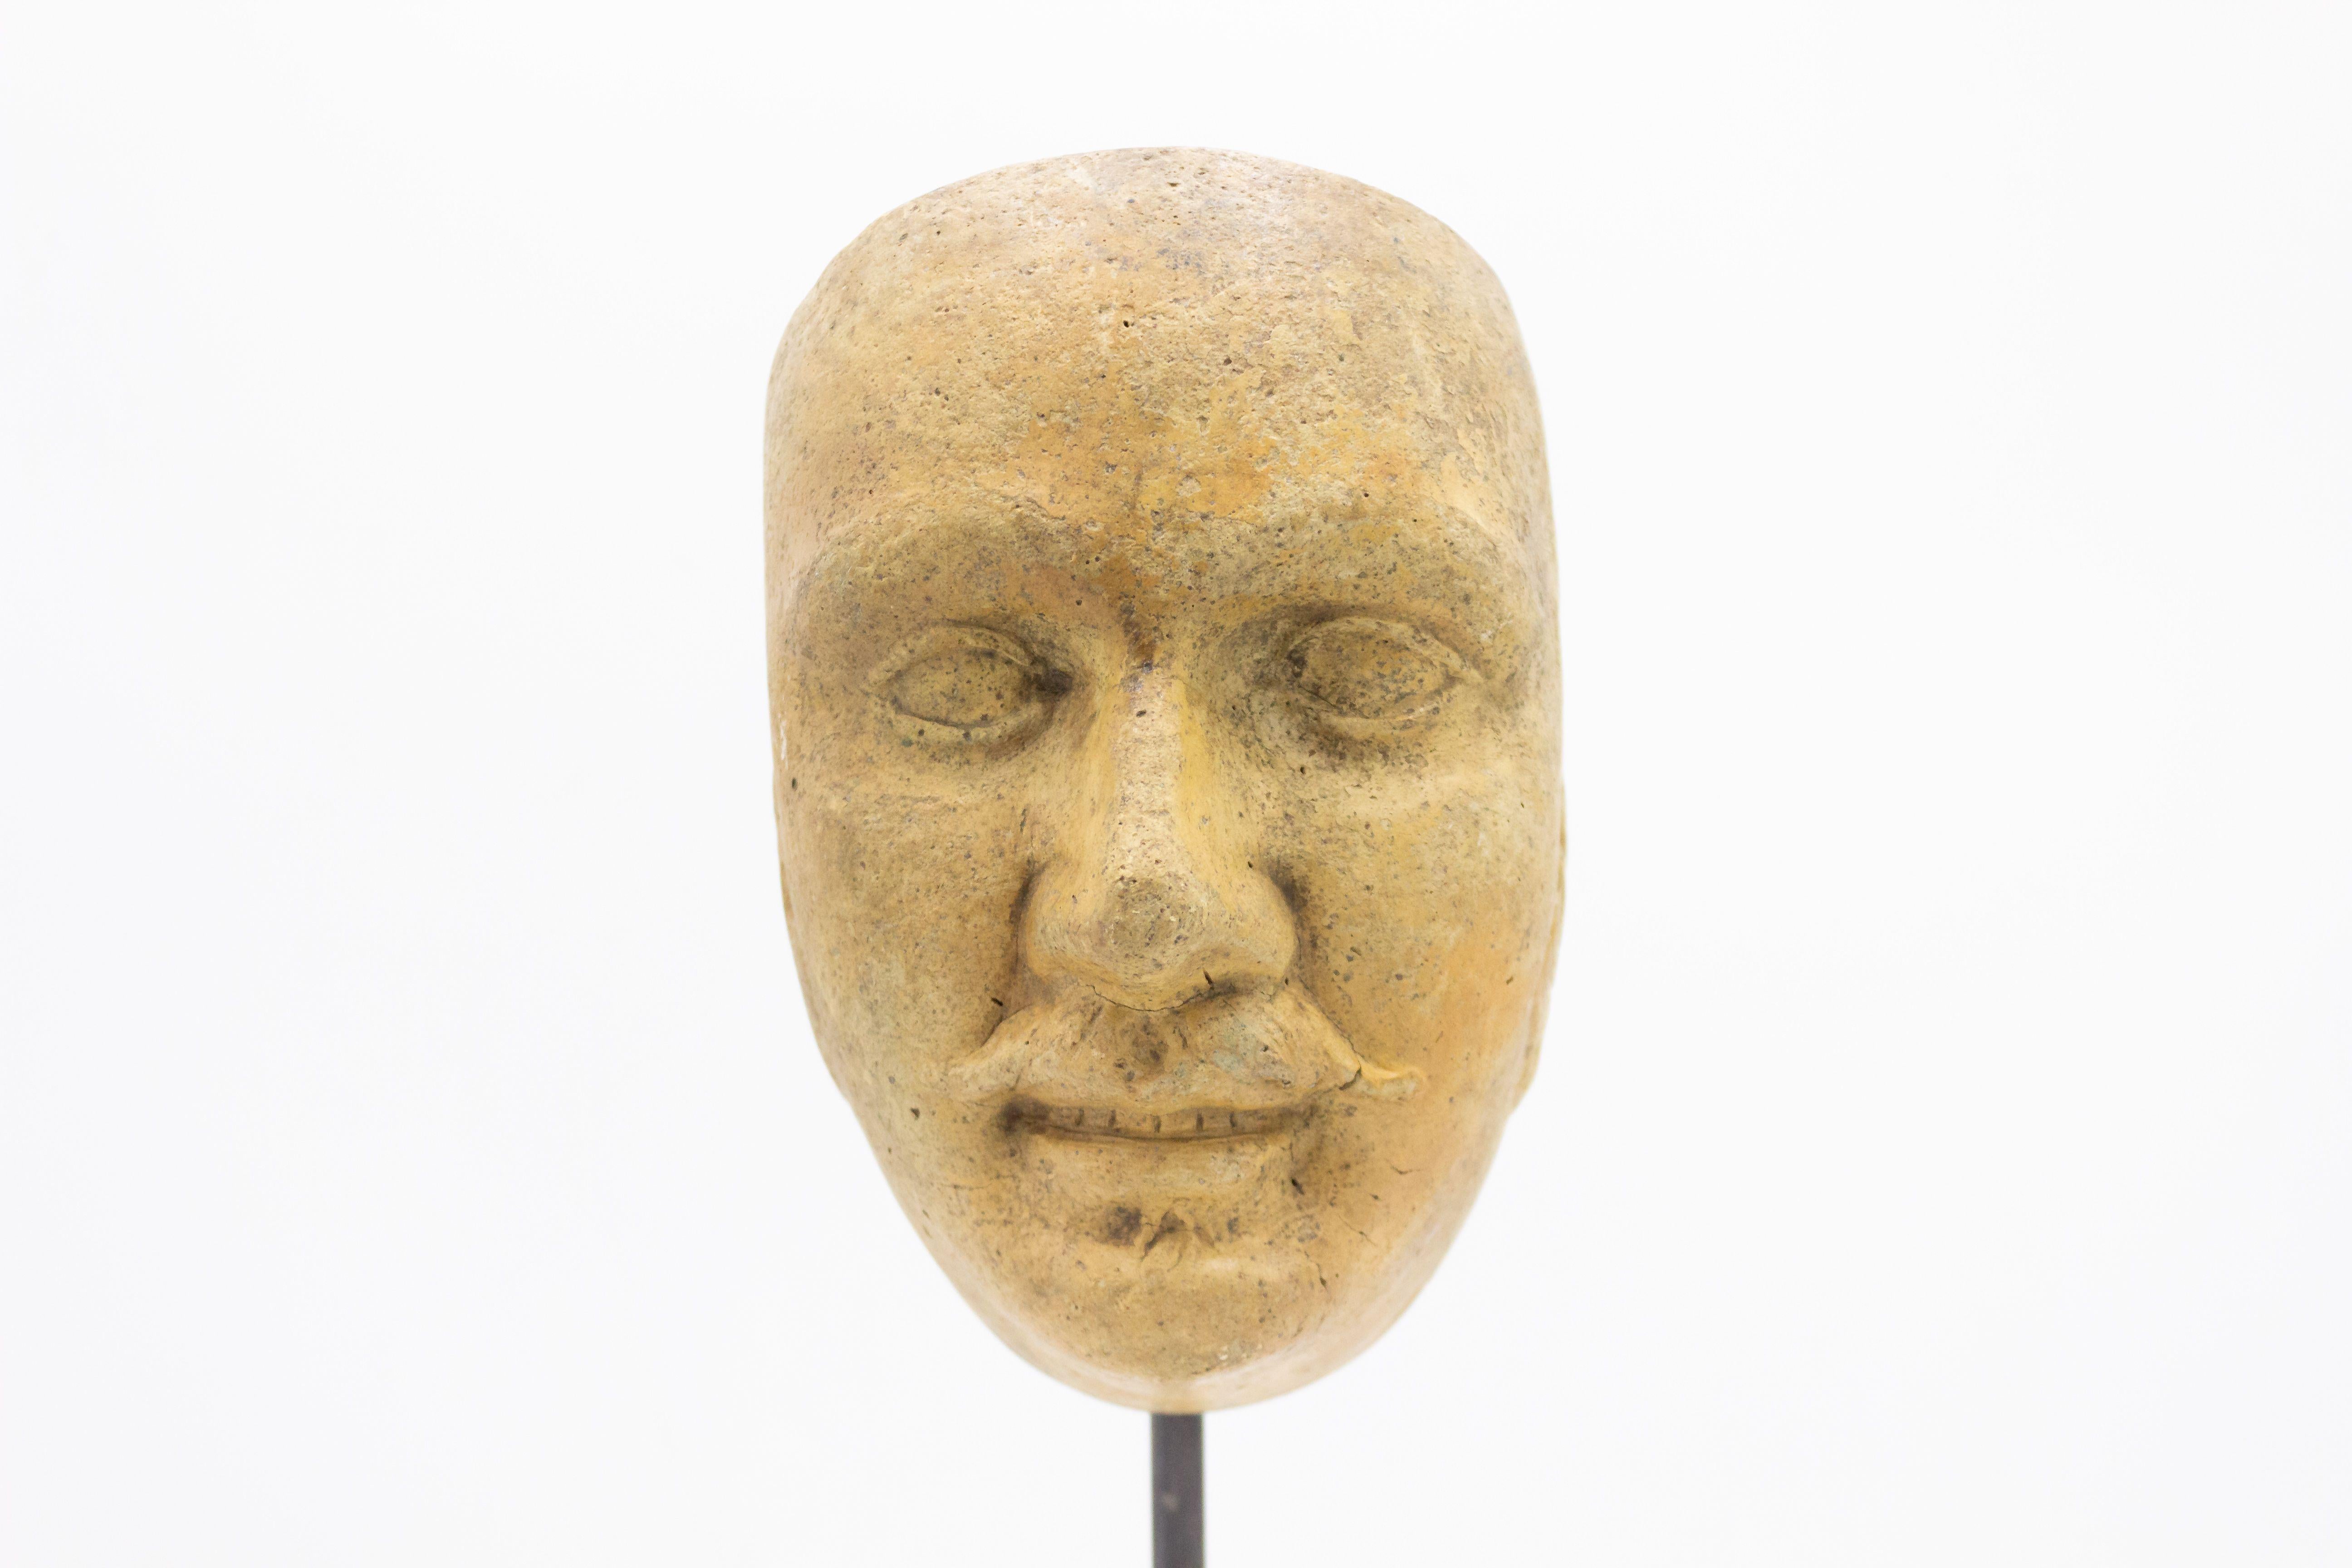 Kontinentaldeutsche (spätes 19. Jh.) Terrakotta-Maskenformbüste eines grinsenden Mannes mit Schnurrbart und Koteletten auf einem quadratischen schwarzen Marmorsockel (Teil einer 39-teiligen Sammlung).
 